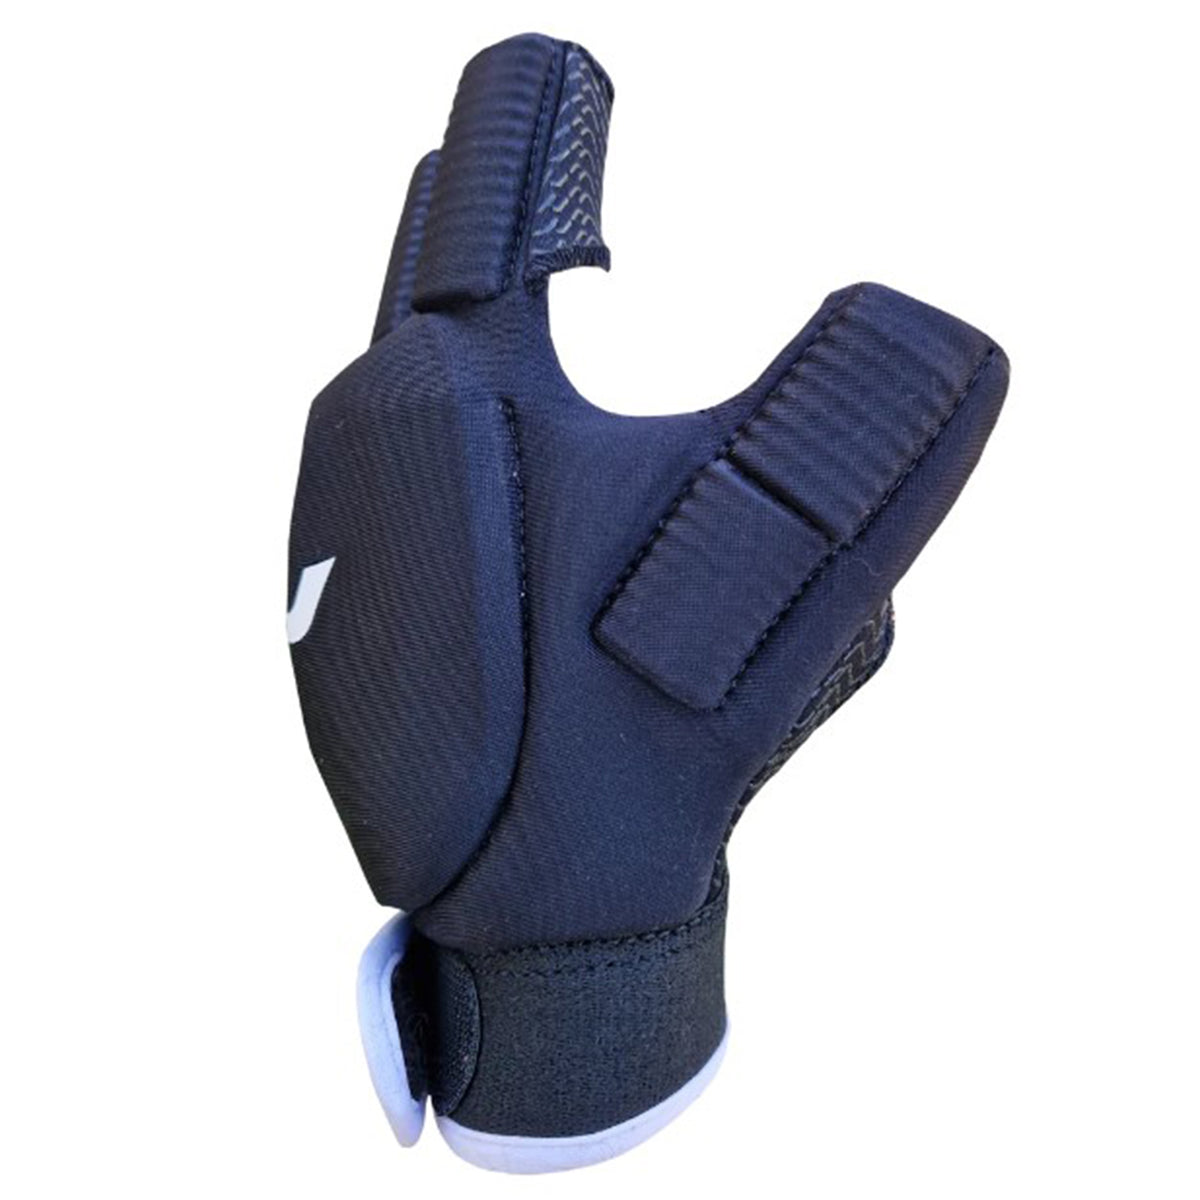 Mercian Evo 0.2 Hockey Glove: Black